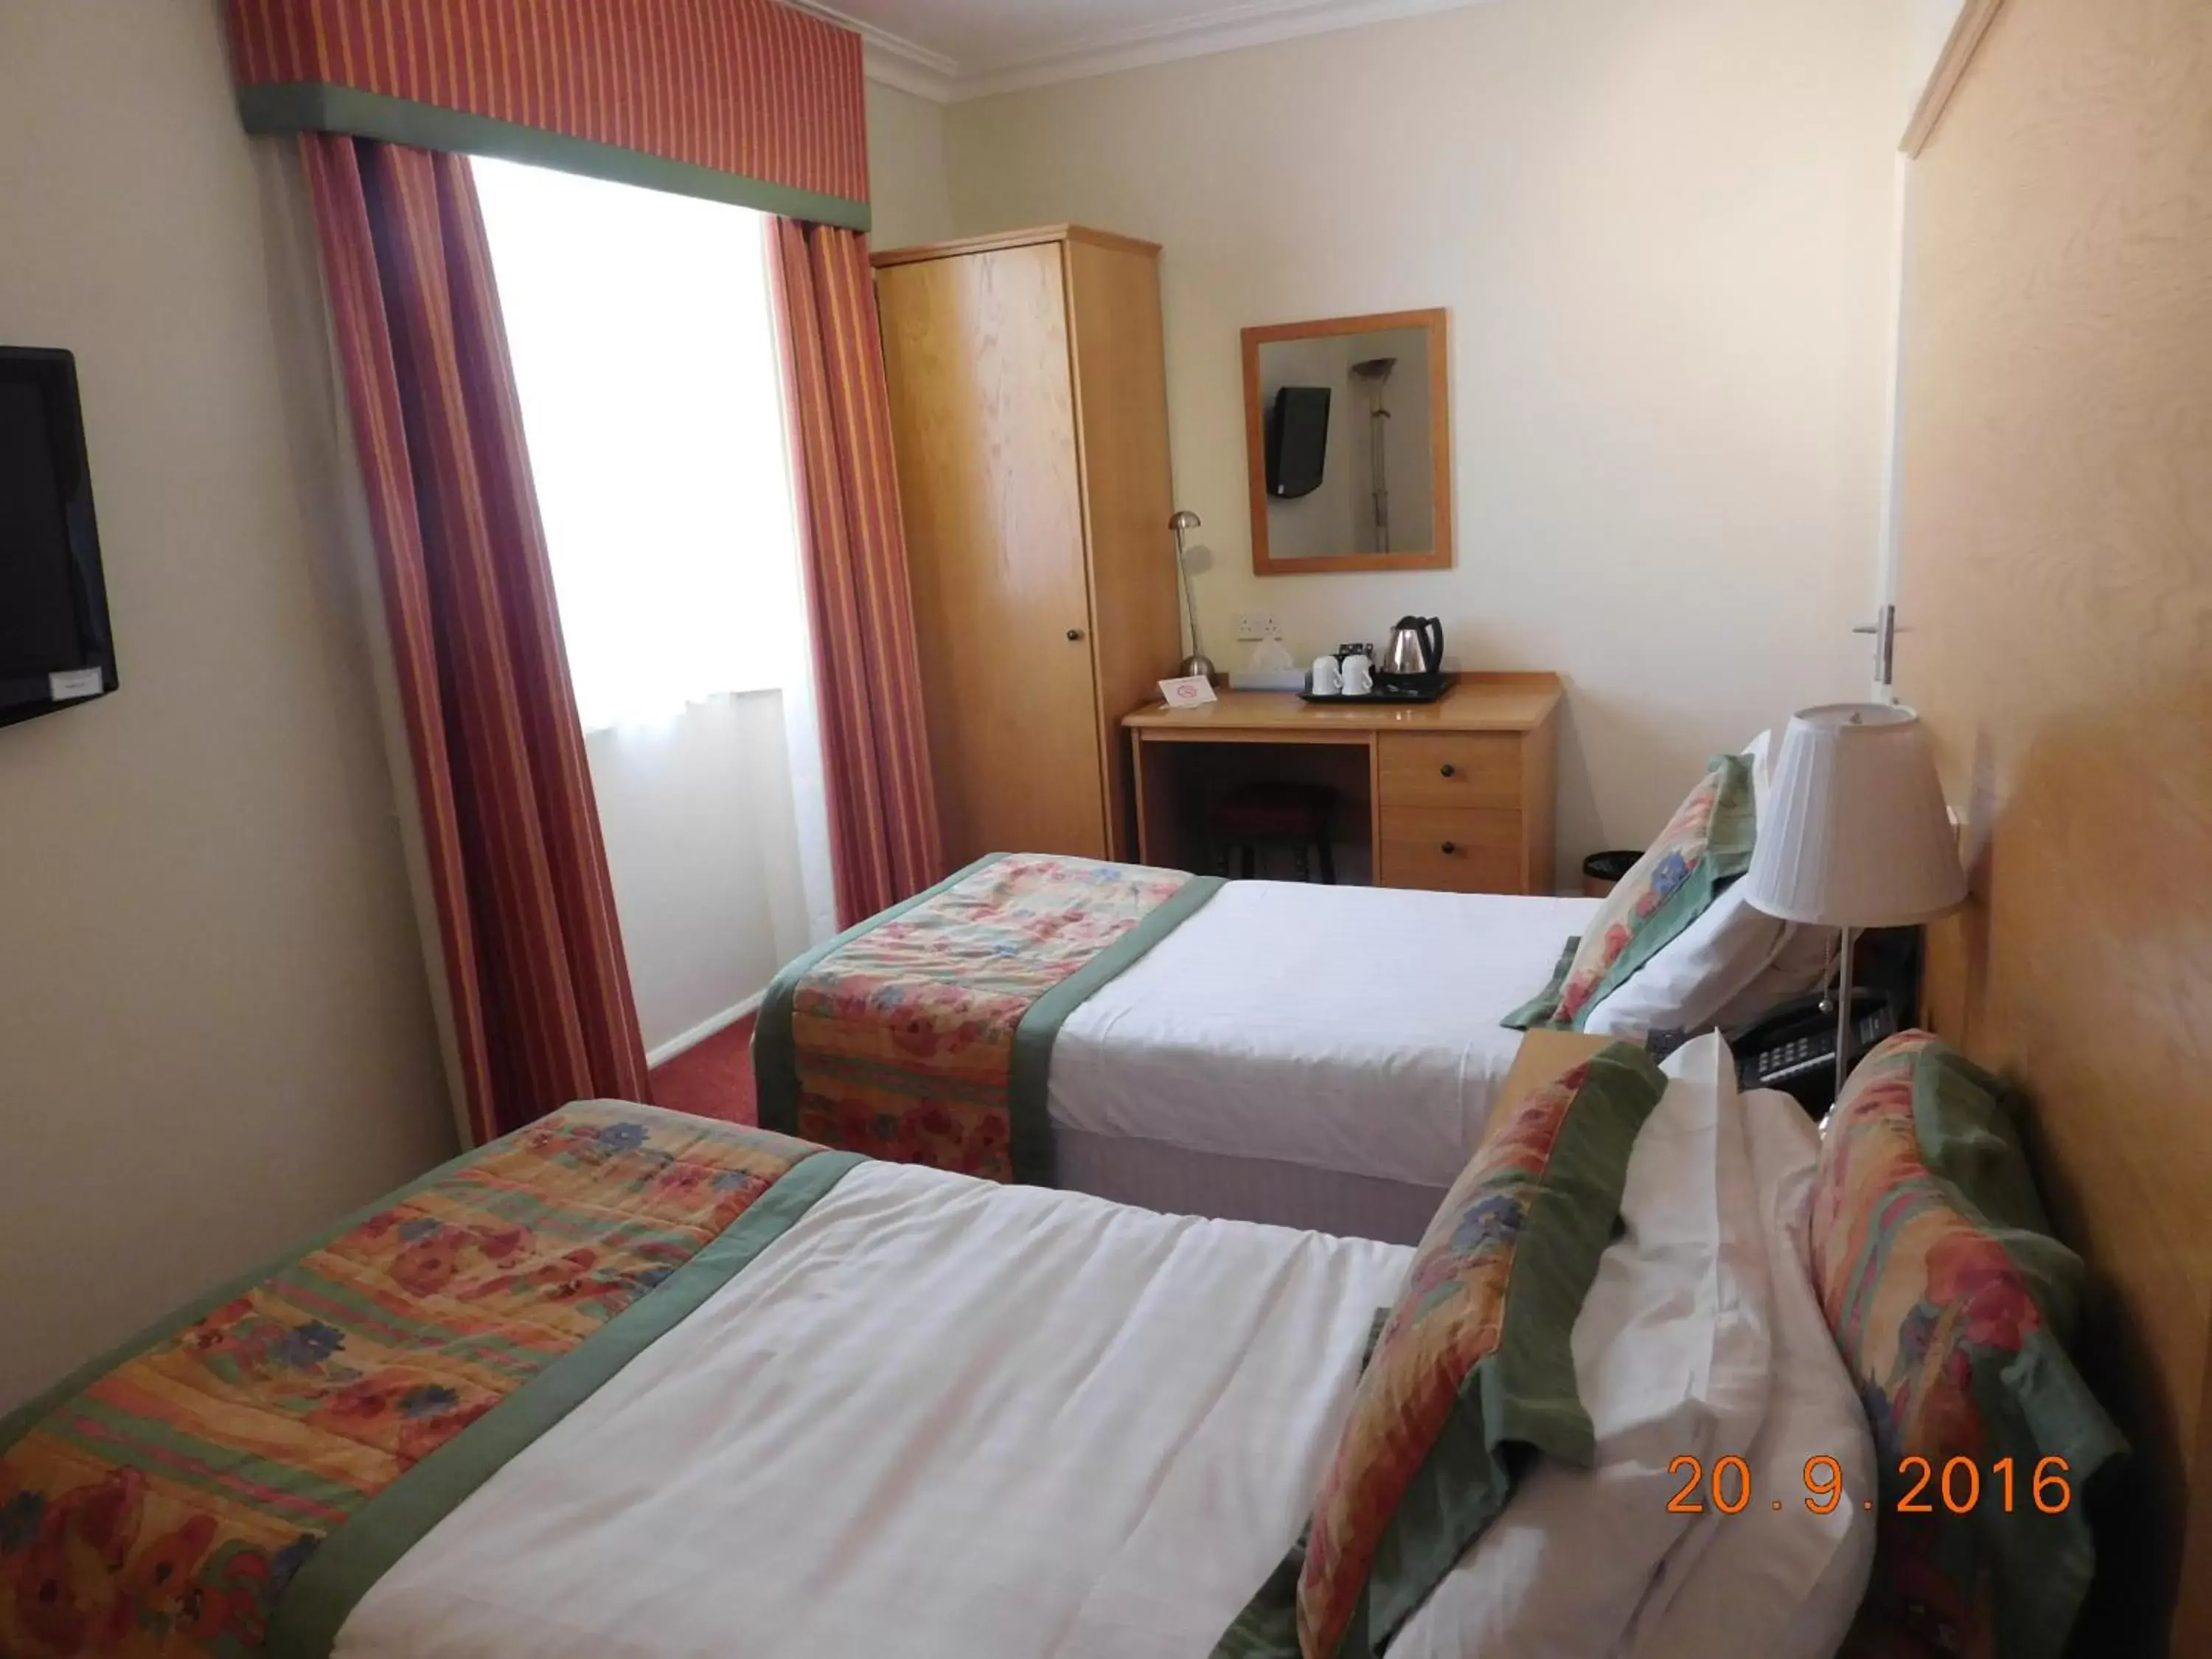 Bedroom, Bed in Horizon Hotel